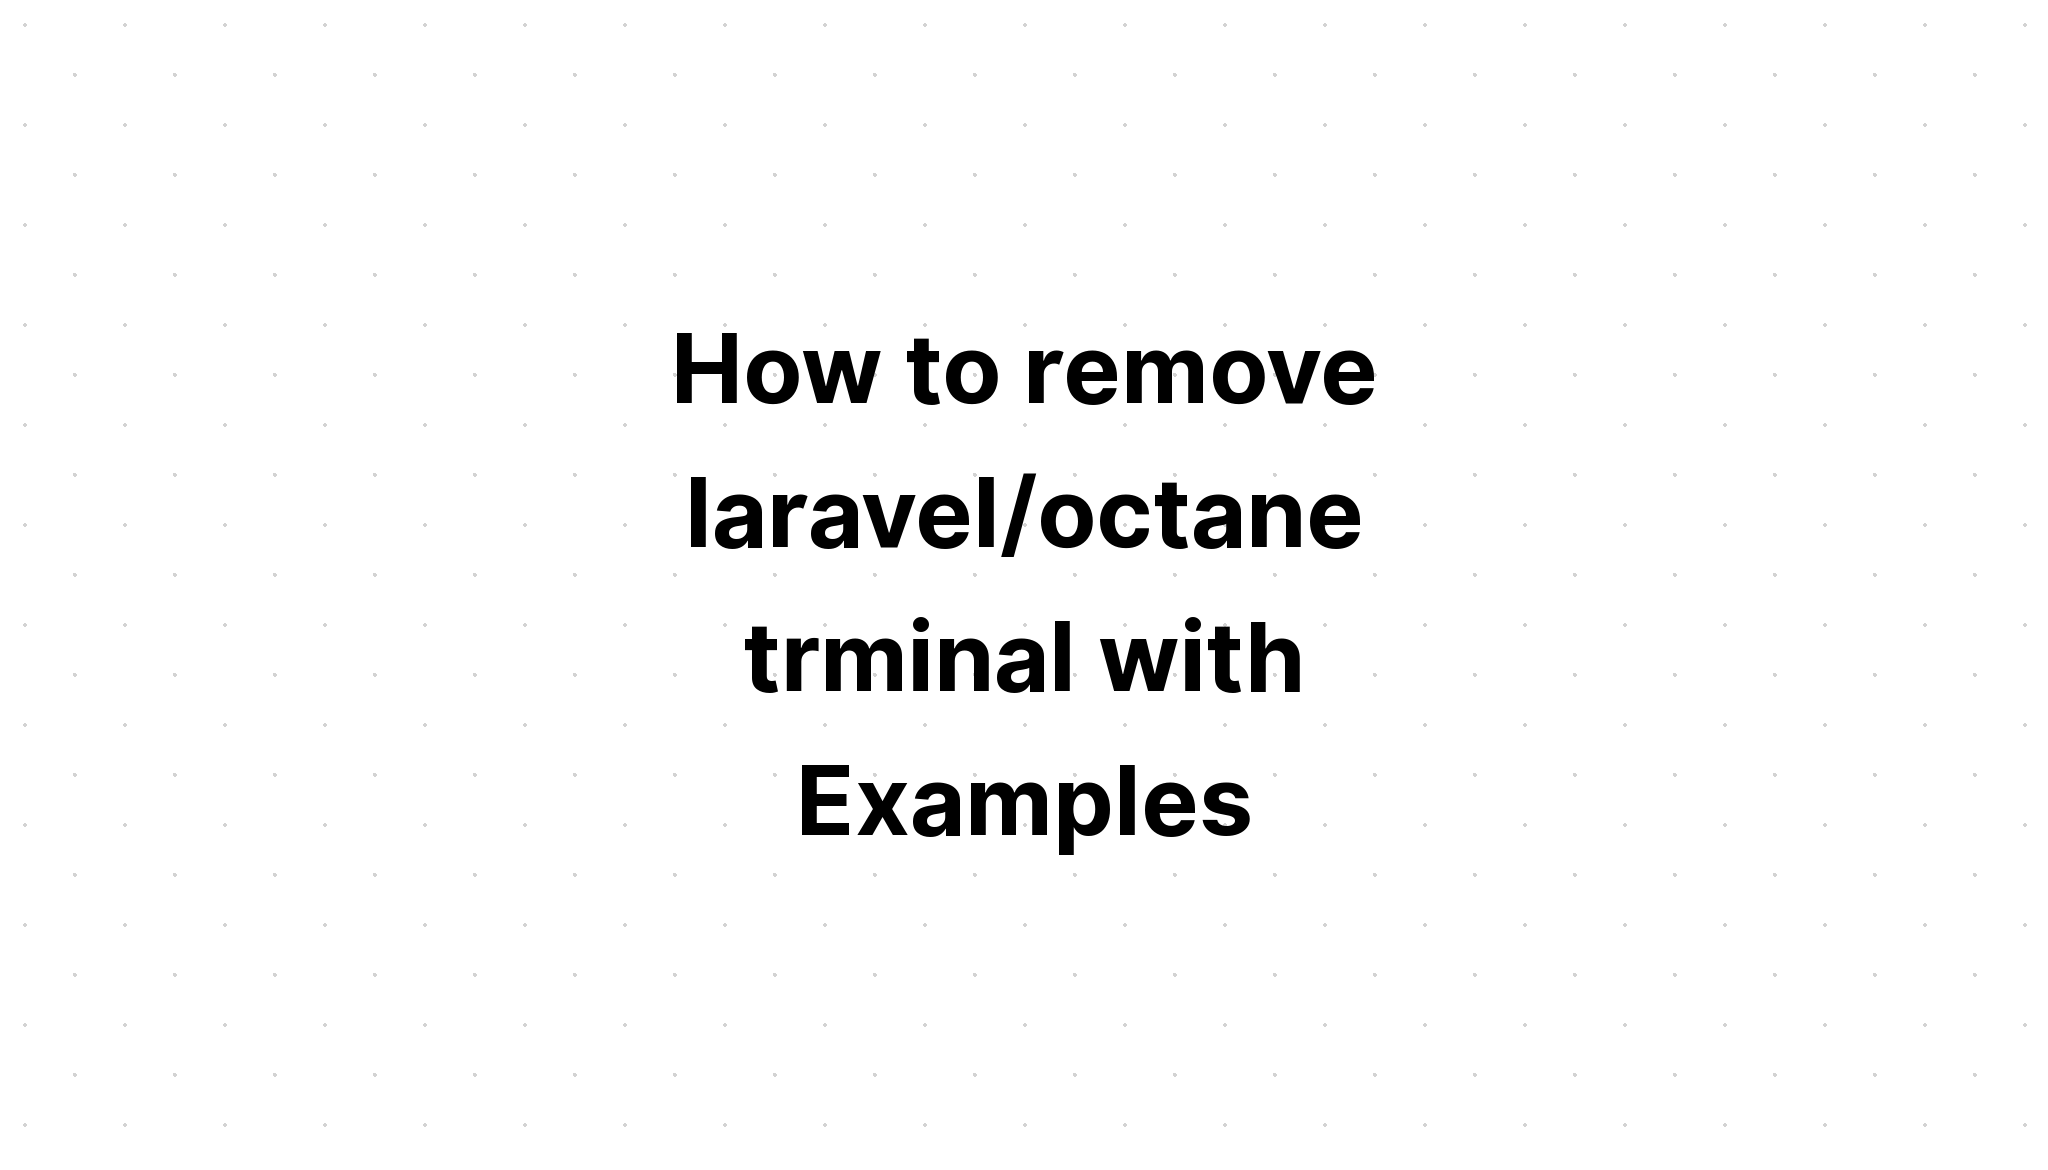 Cách xóa thiết bị đầu cuối laravel/octane với các ví dụ